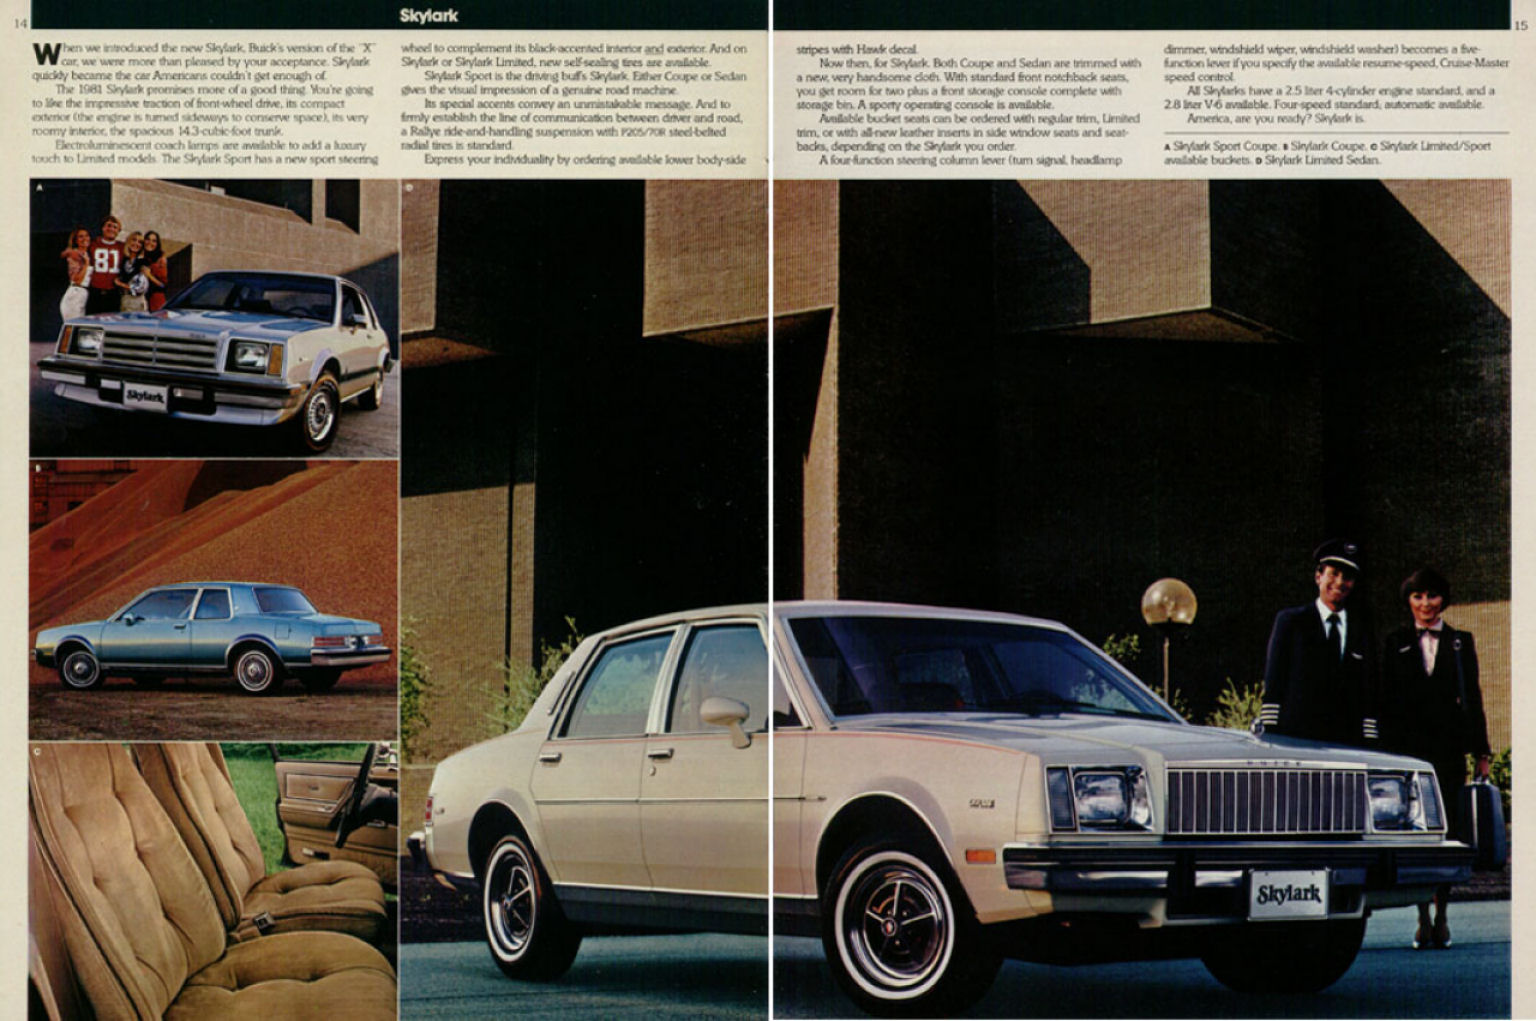 1981 Buick Full Line-14-15